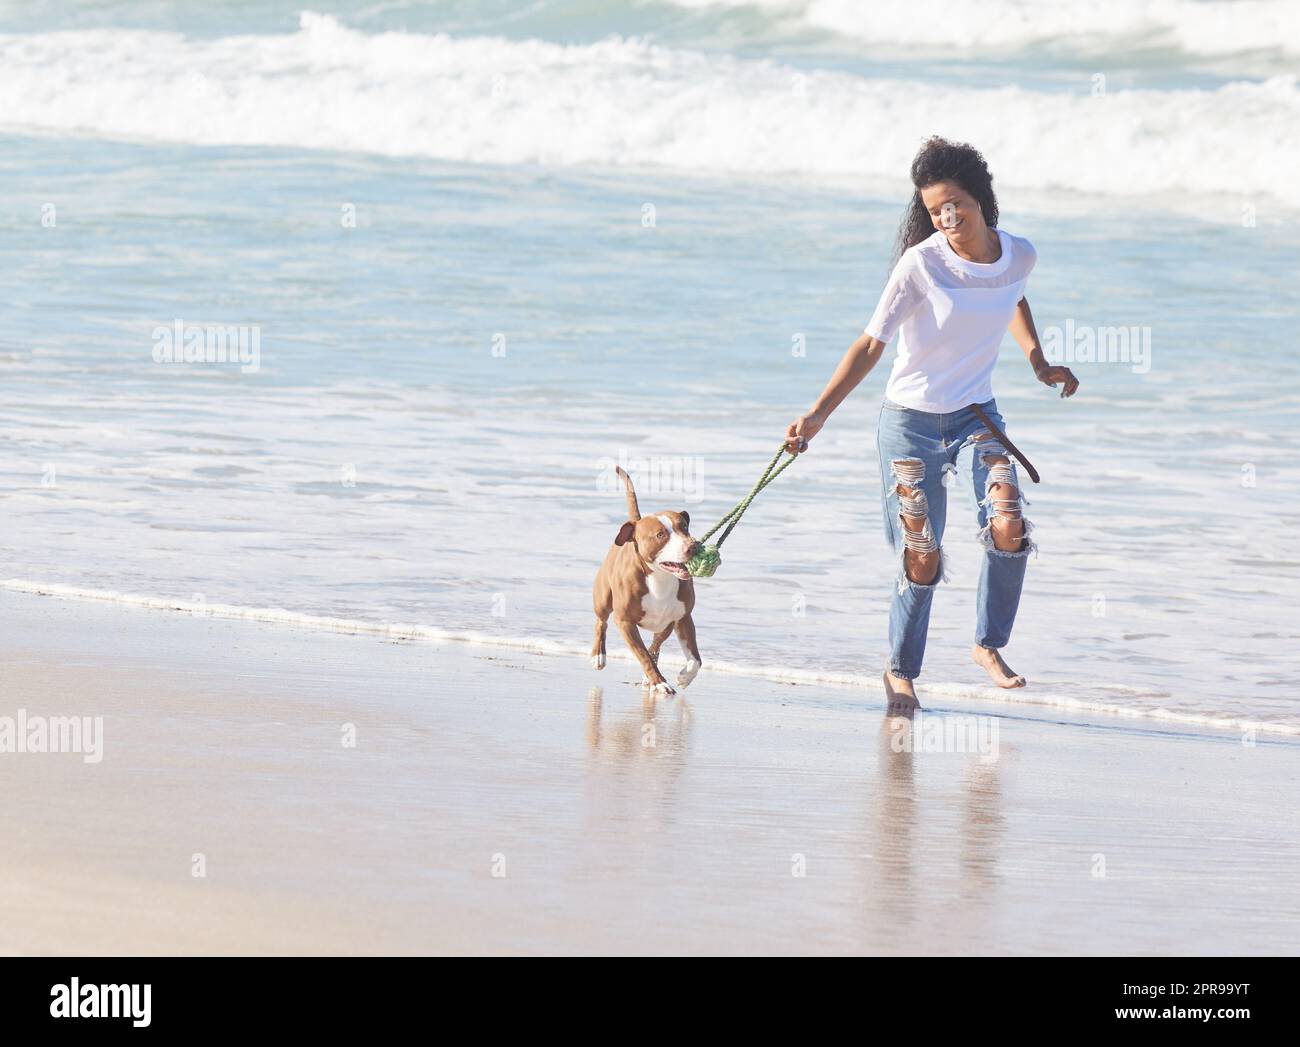 Les meilleures choses de la vie sont la fourrure. Une femme jouant avec son pit Bull à la plage. Banque D'Images